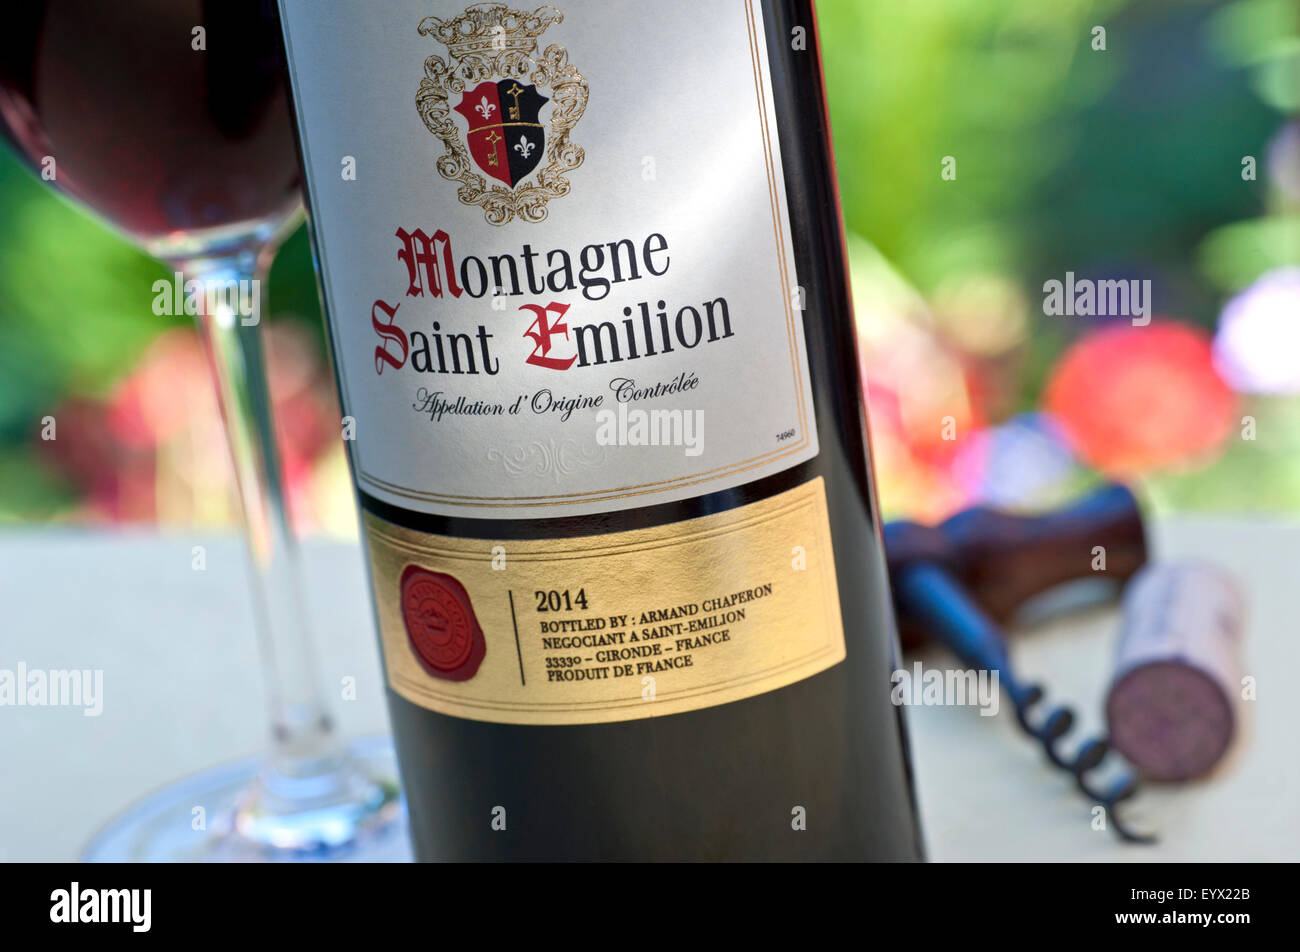 MONTAGNE SAINT EMILION Flasche und Glas 2014 Montagne Saint-Emilion Wein in Alfresco Weinprobe Lage auf Garten Terrasse Tisch Stockfoto